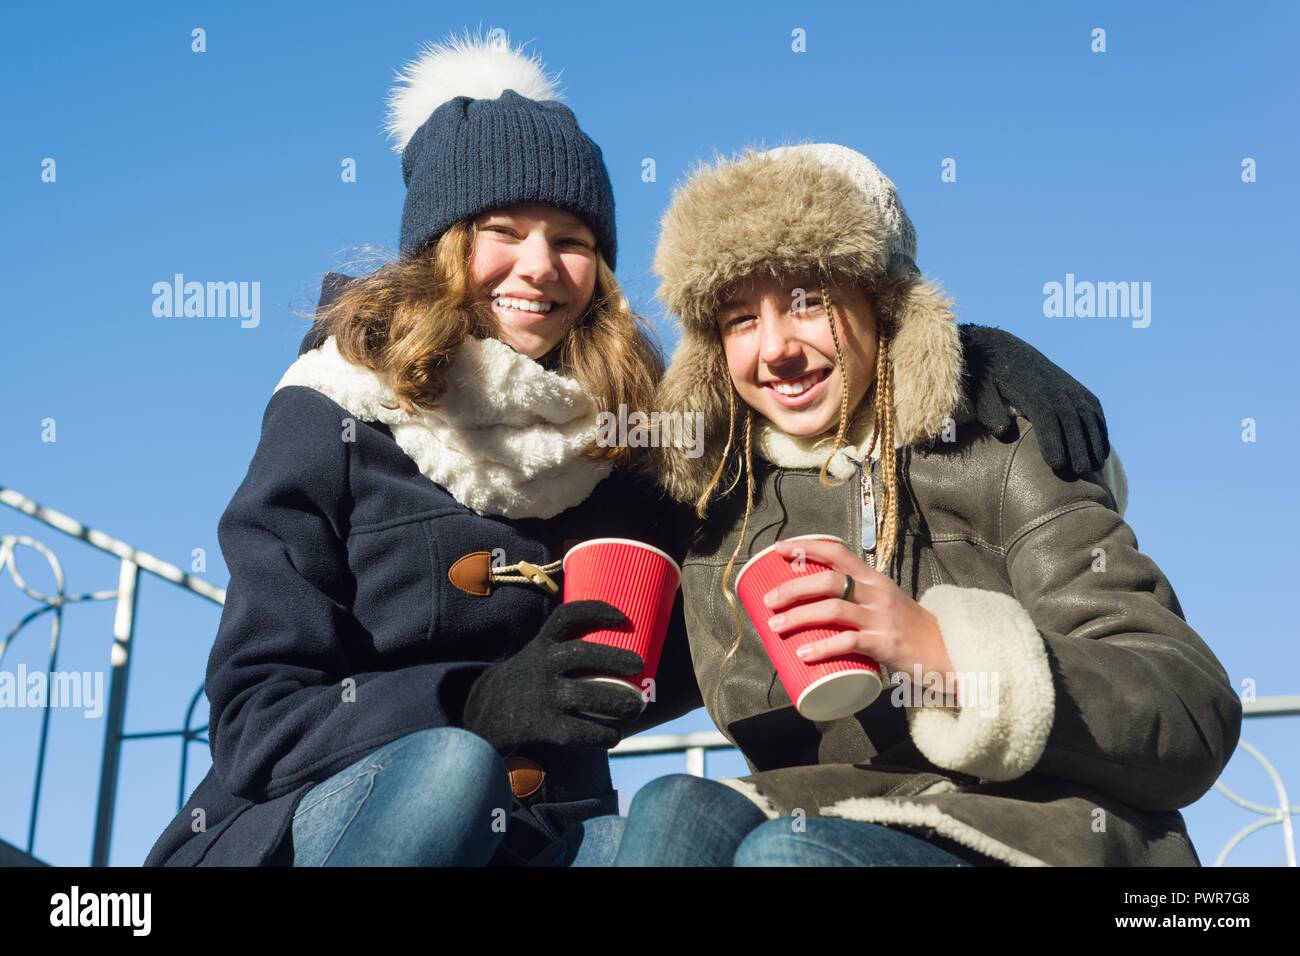 Zwei junge Mädchen im Teenageralter Spaß im Freien, Freundinnen im Winter Kleidung, positive Menschen und Freundschaft Konzept Stockfoto